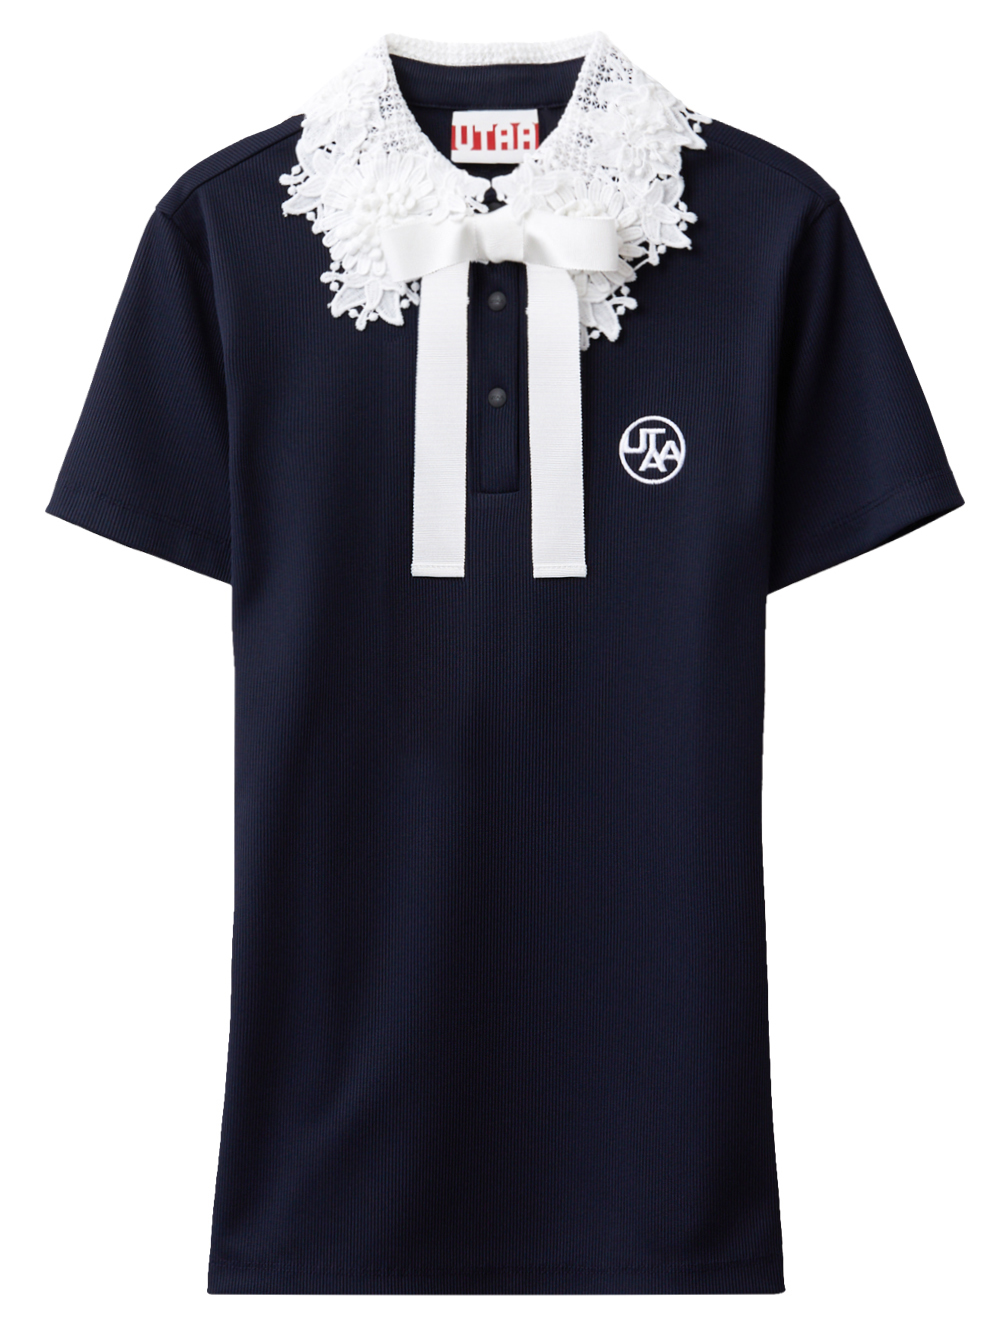 UTAA Notredame Flower Lace T-Shirt  : Women&#039;s Dark Navy  (UC3STF200DA)